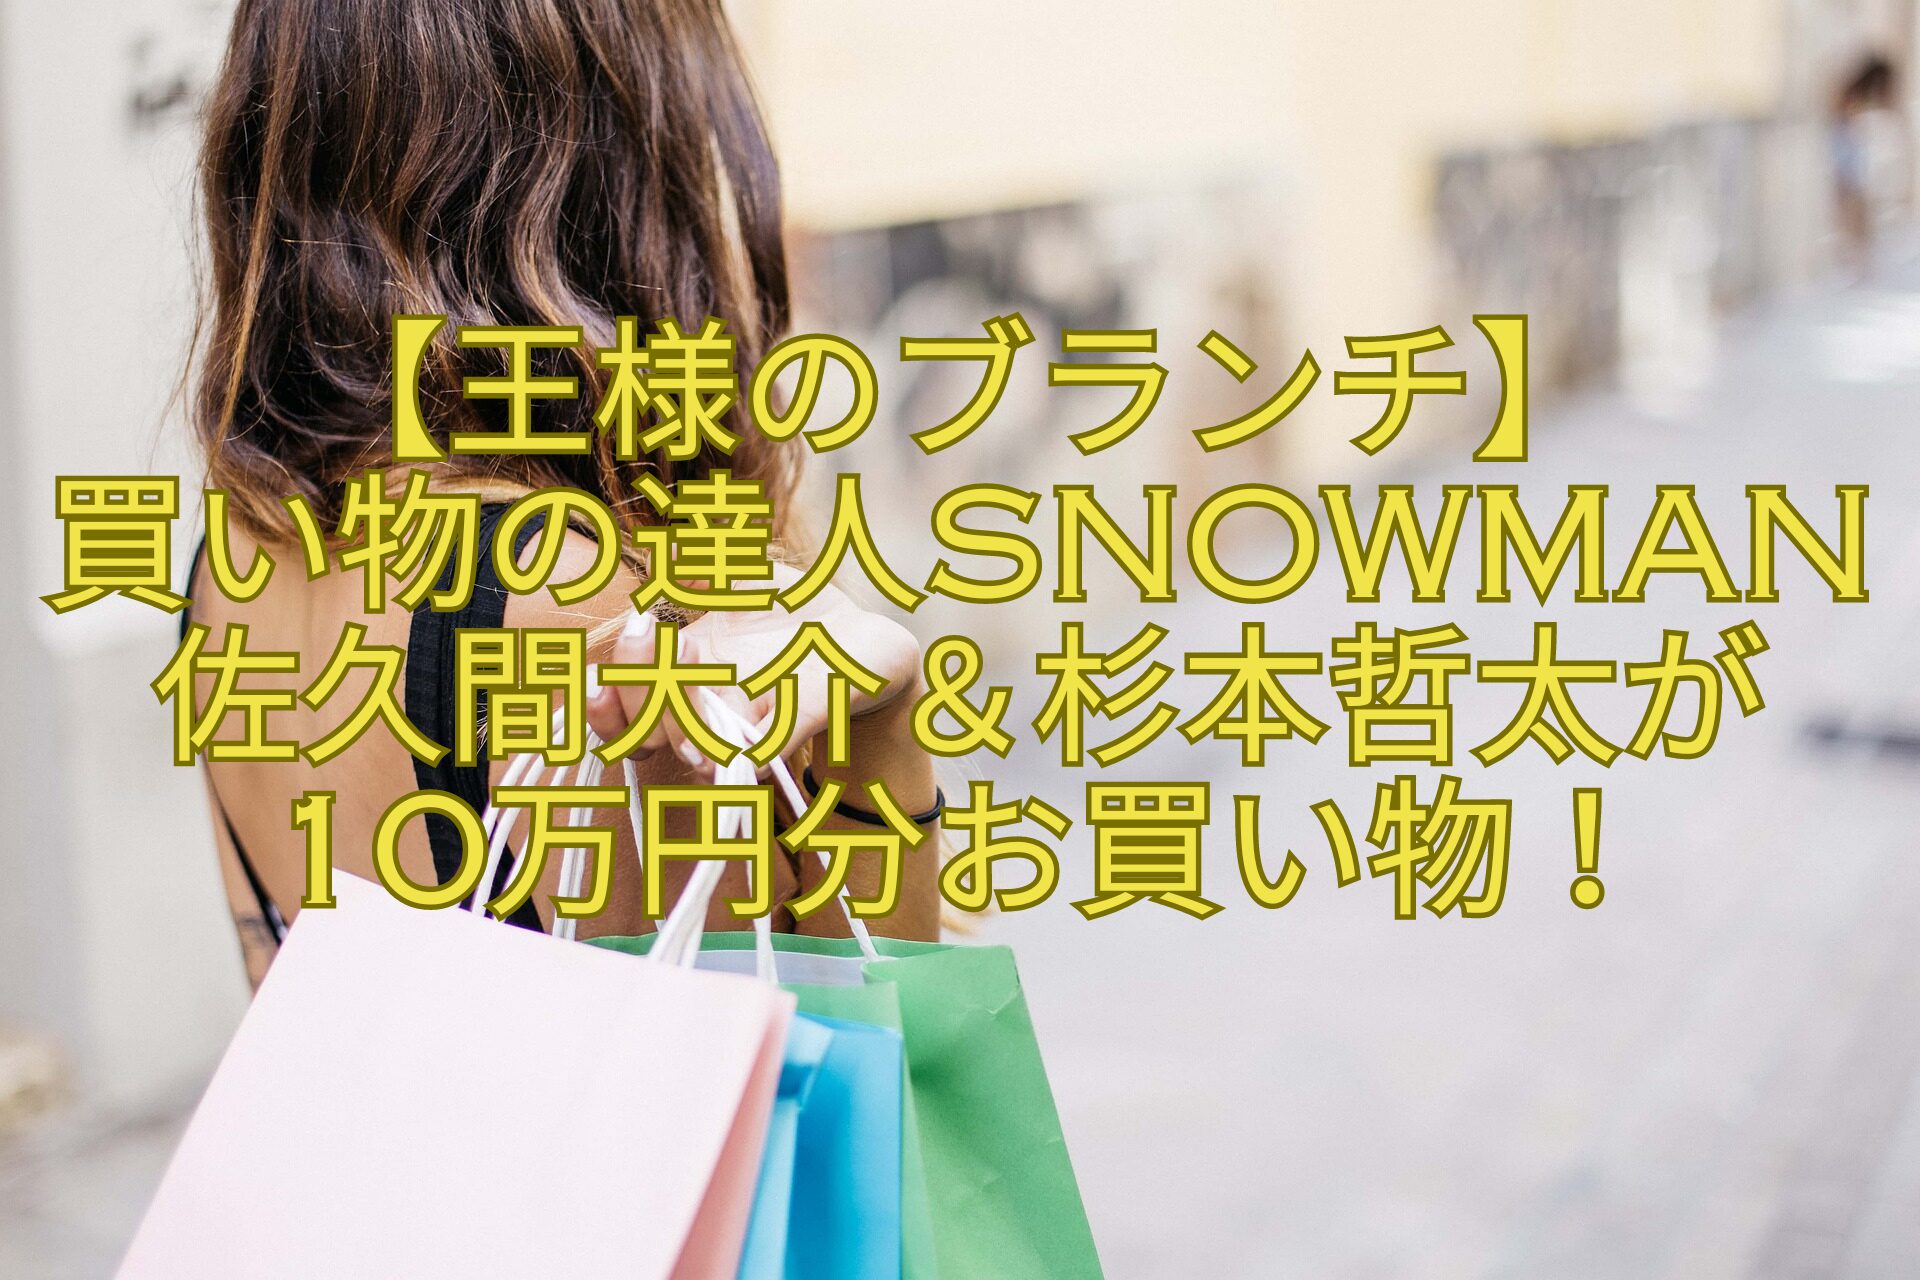 【王様のブランチ】-買い物の達人SnowMan佐久間大介＆杉本哲太が-10万円分お買い物